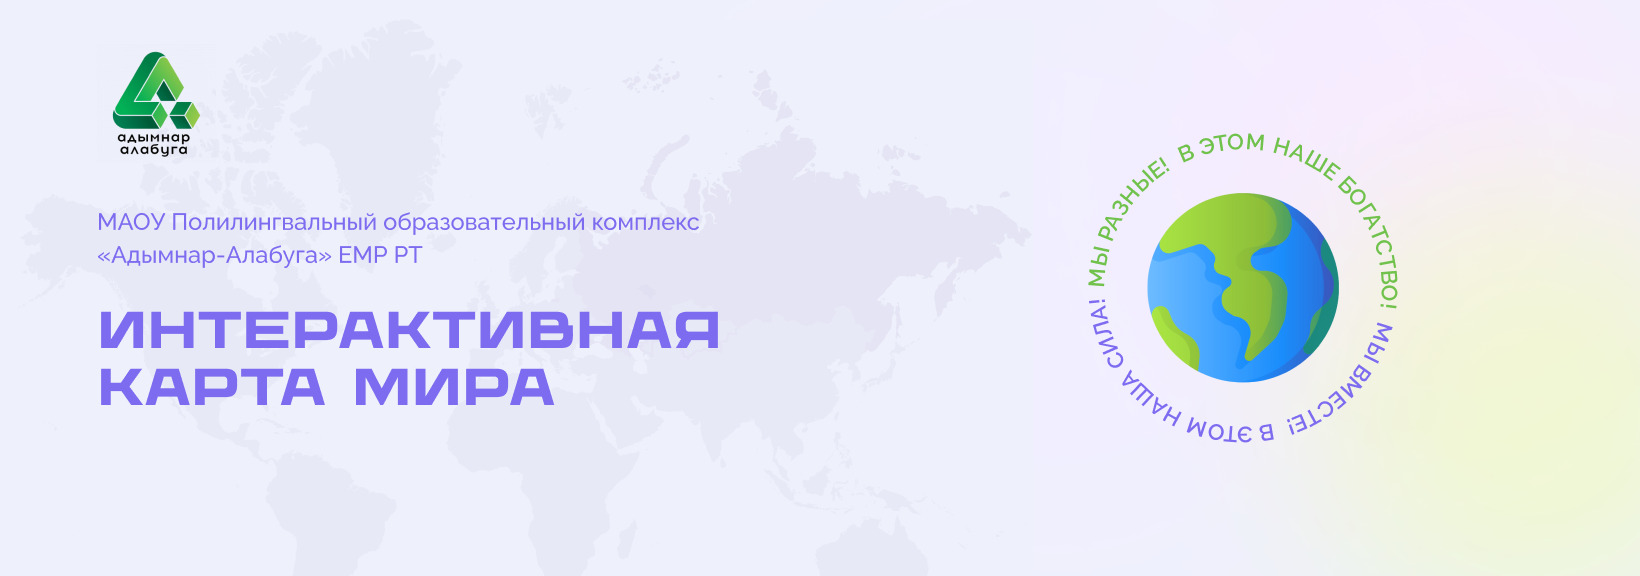 Интерактивная карта мира для Полилингвального образовательного комплекса «Адымнар-Алабуга»